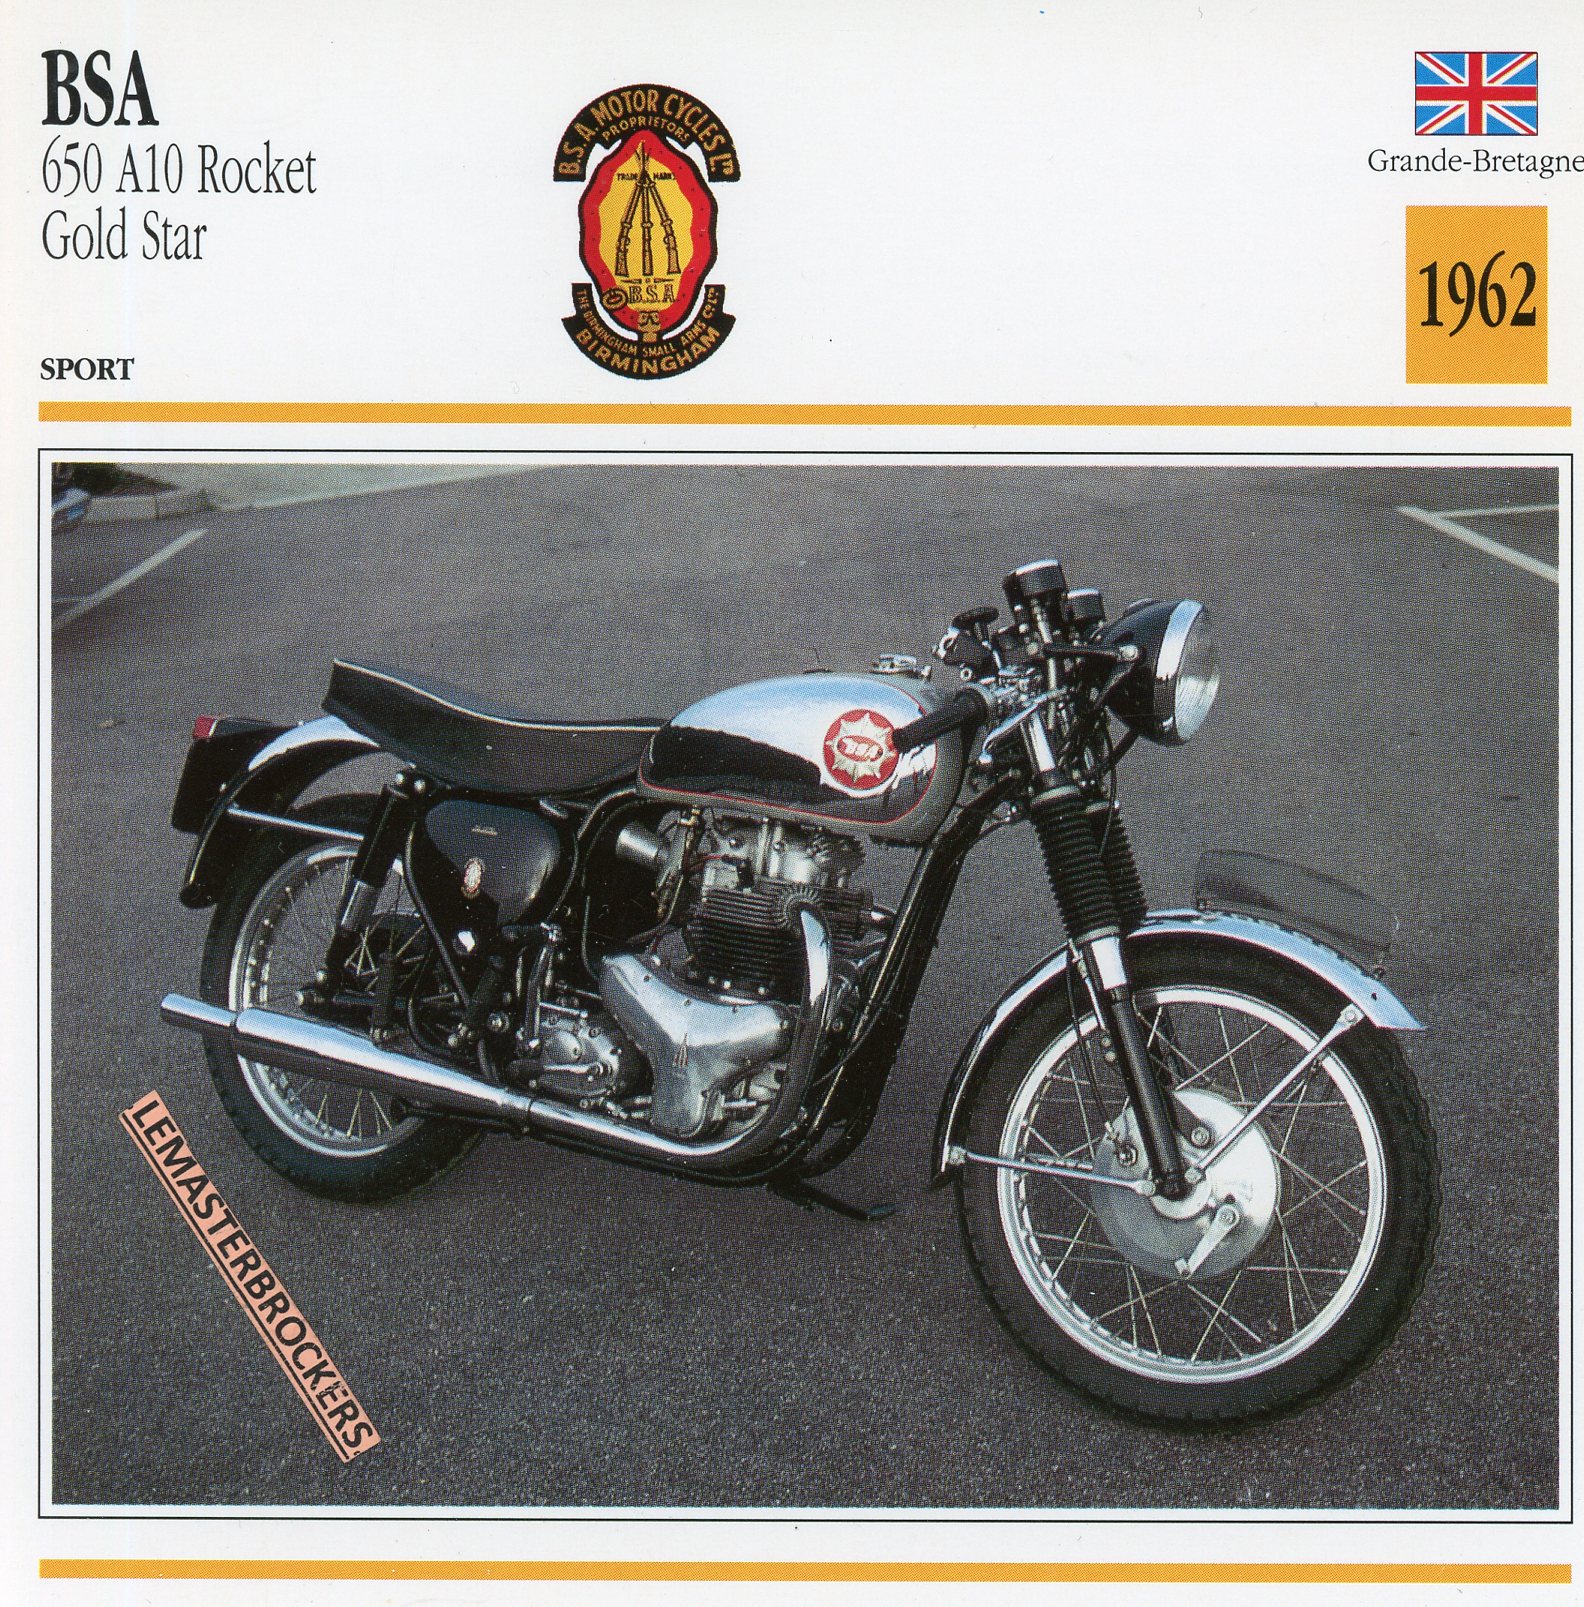 BSA-650-A10-ROCKET-GOLDSTAR-1962-FICHE-MOTO-CARDS-ATLAS-LEMASTERBROCKERS